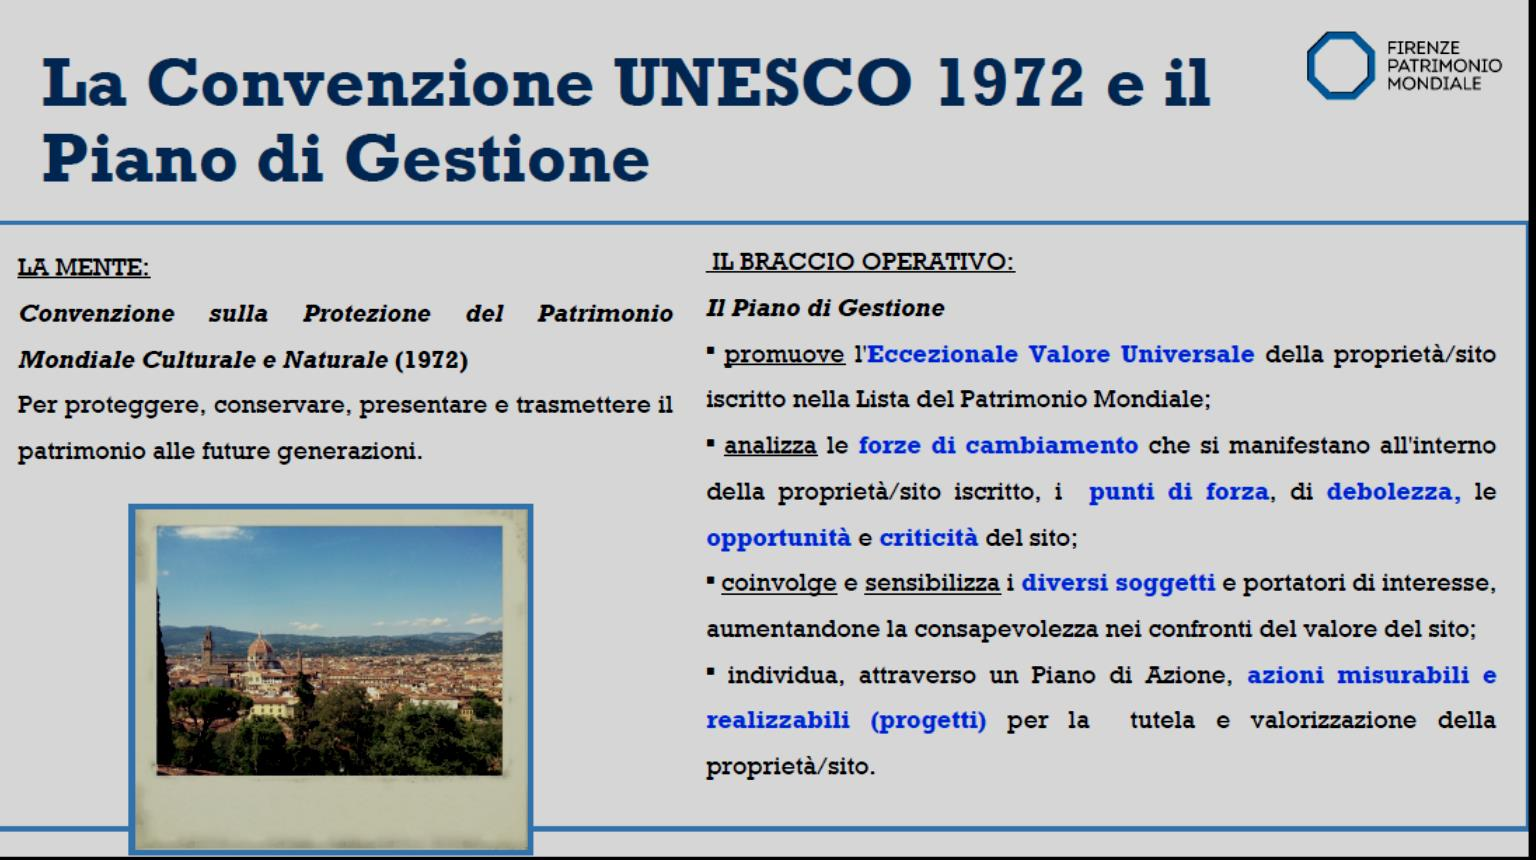 Η Συνθήκη UNESCO του 1972 και το Σχέδιο Διαχείρισης Το θεωρητικό πλαίσιο: Συνθήκη για την προστασία της Παγκόσμιας Πολιτιστικής και Φυσικής Κληρονομιάς (1972) Για την προστασία, διαφύλαξη, παρουσίαση